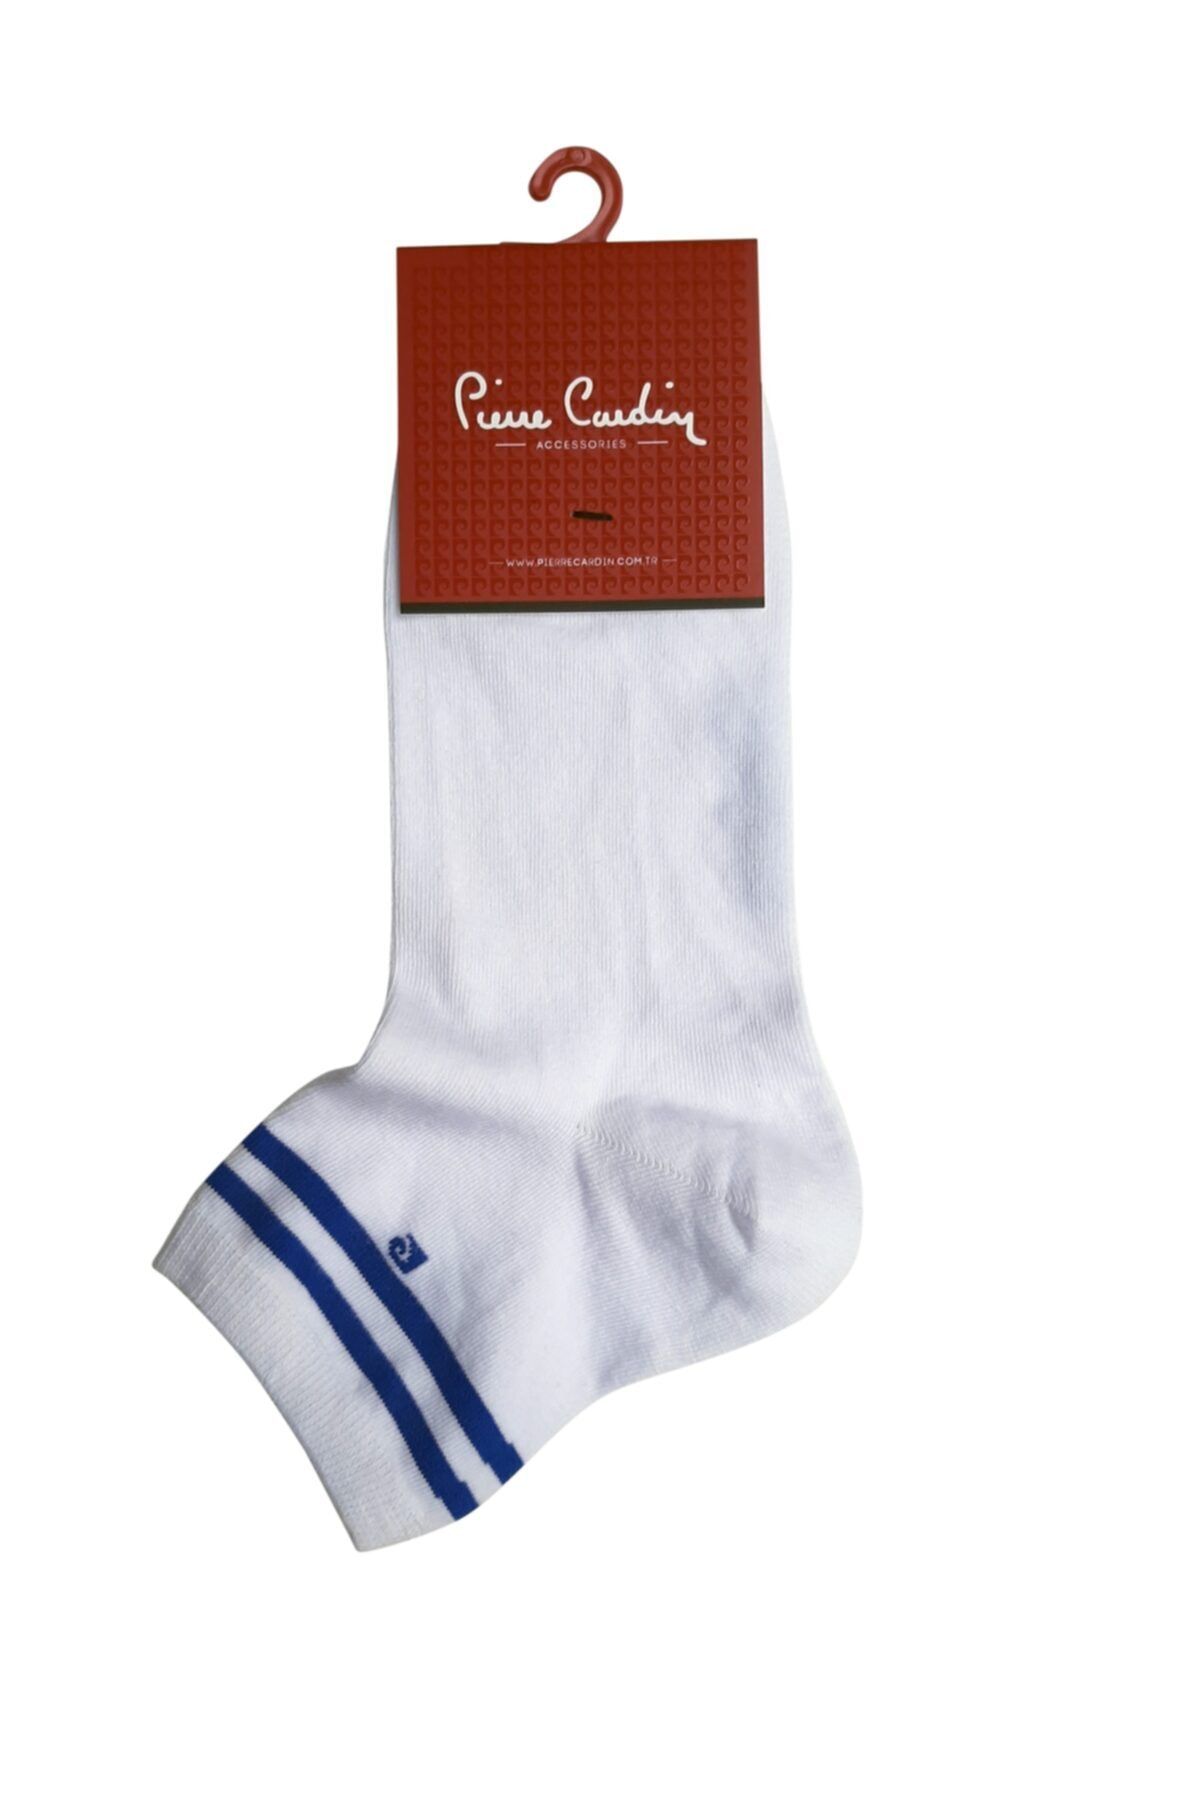 Pierre Cardin Çemberli Kısa Konç Pamuk Çorap Beyaz/sax